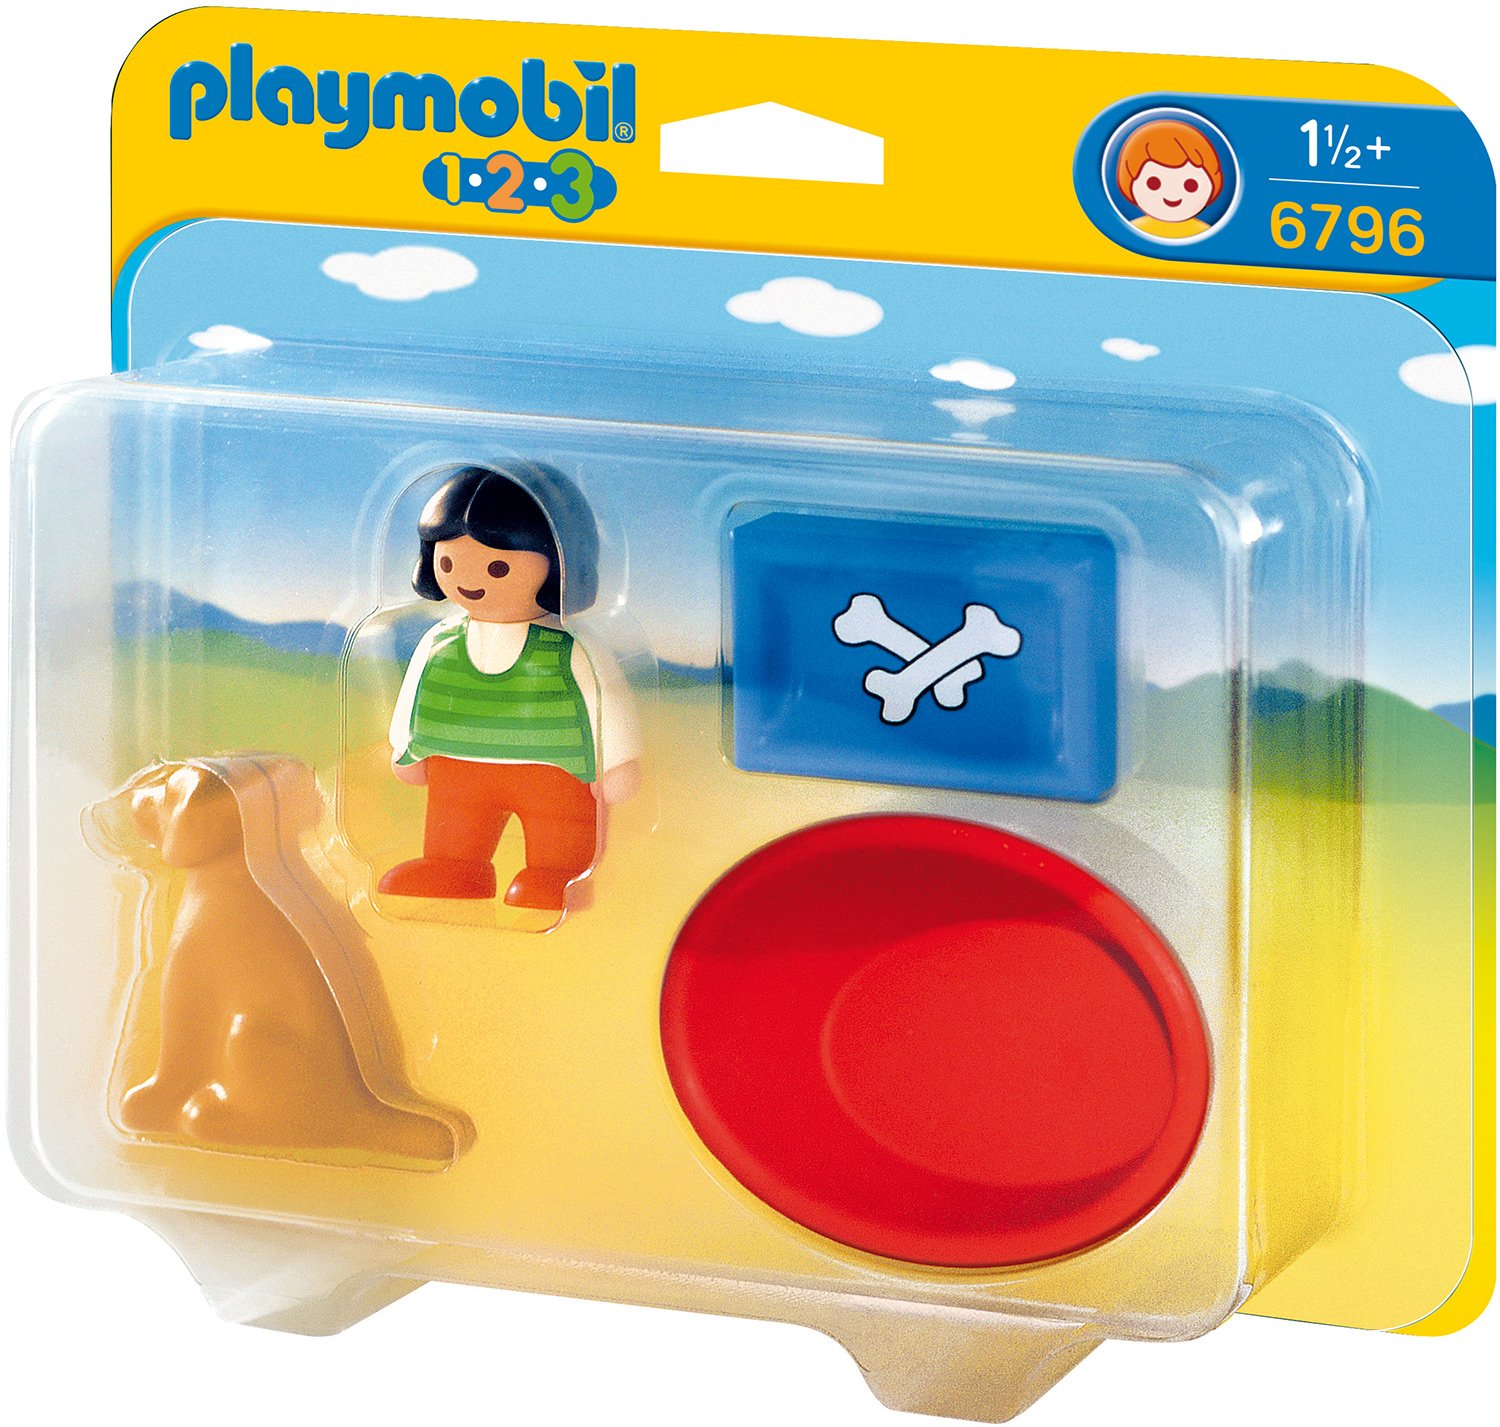 Playmobil Girl With Dog